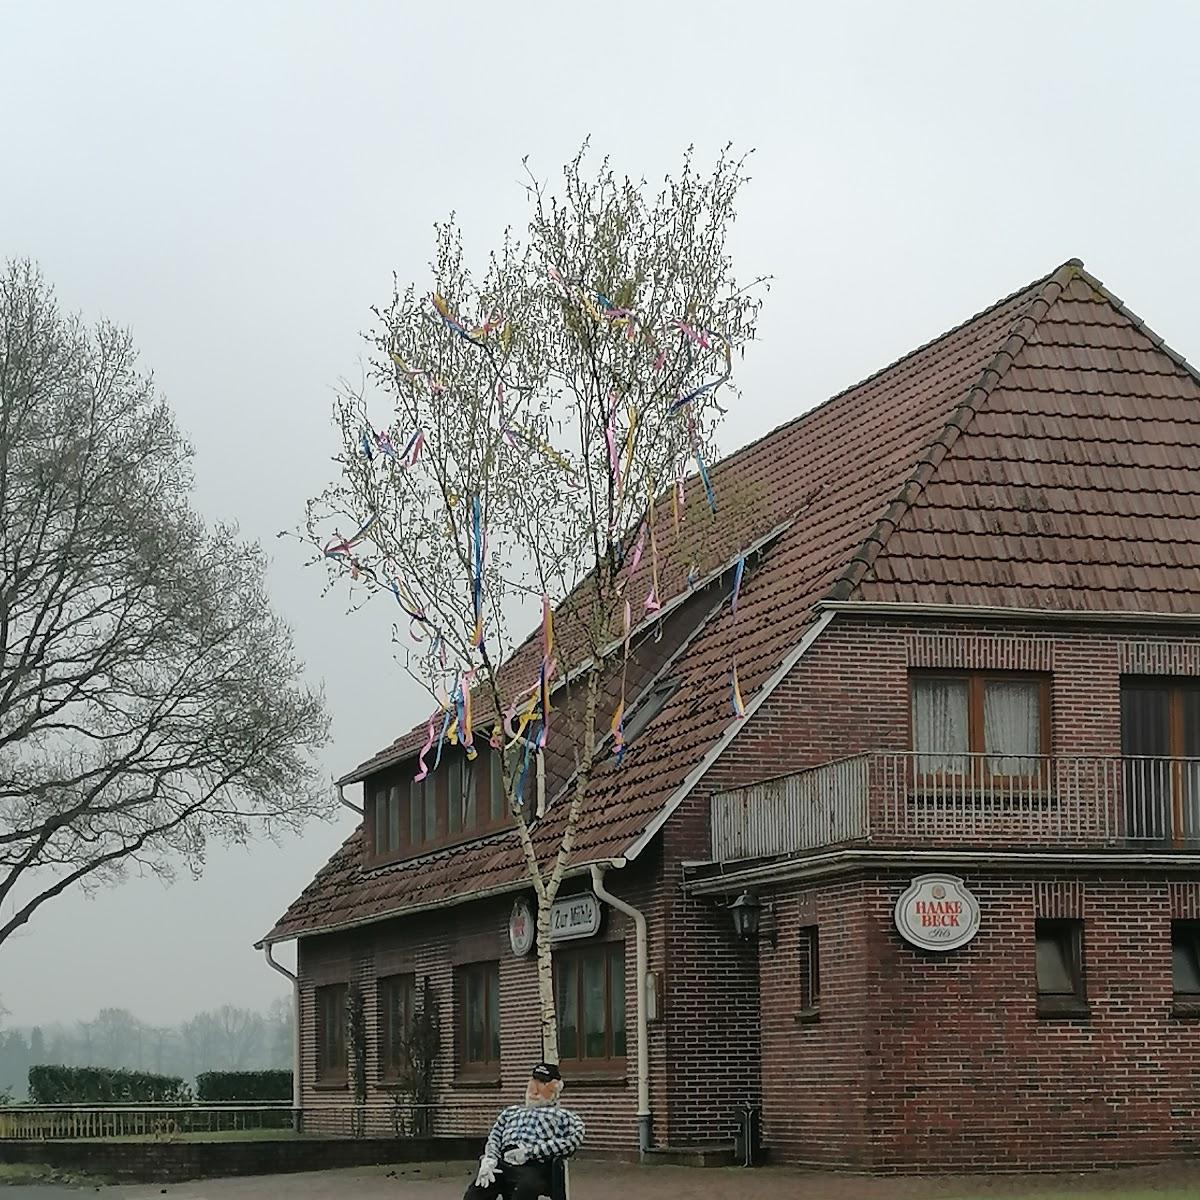 Restaurant "Zur Mühle" in Edewecht